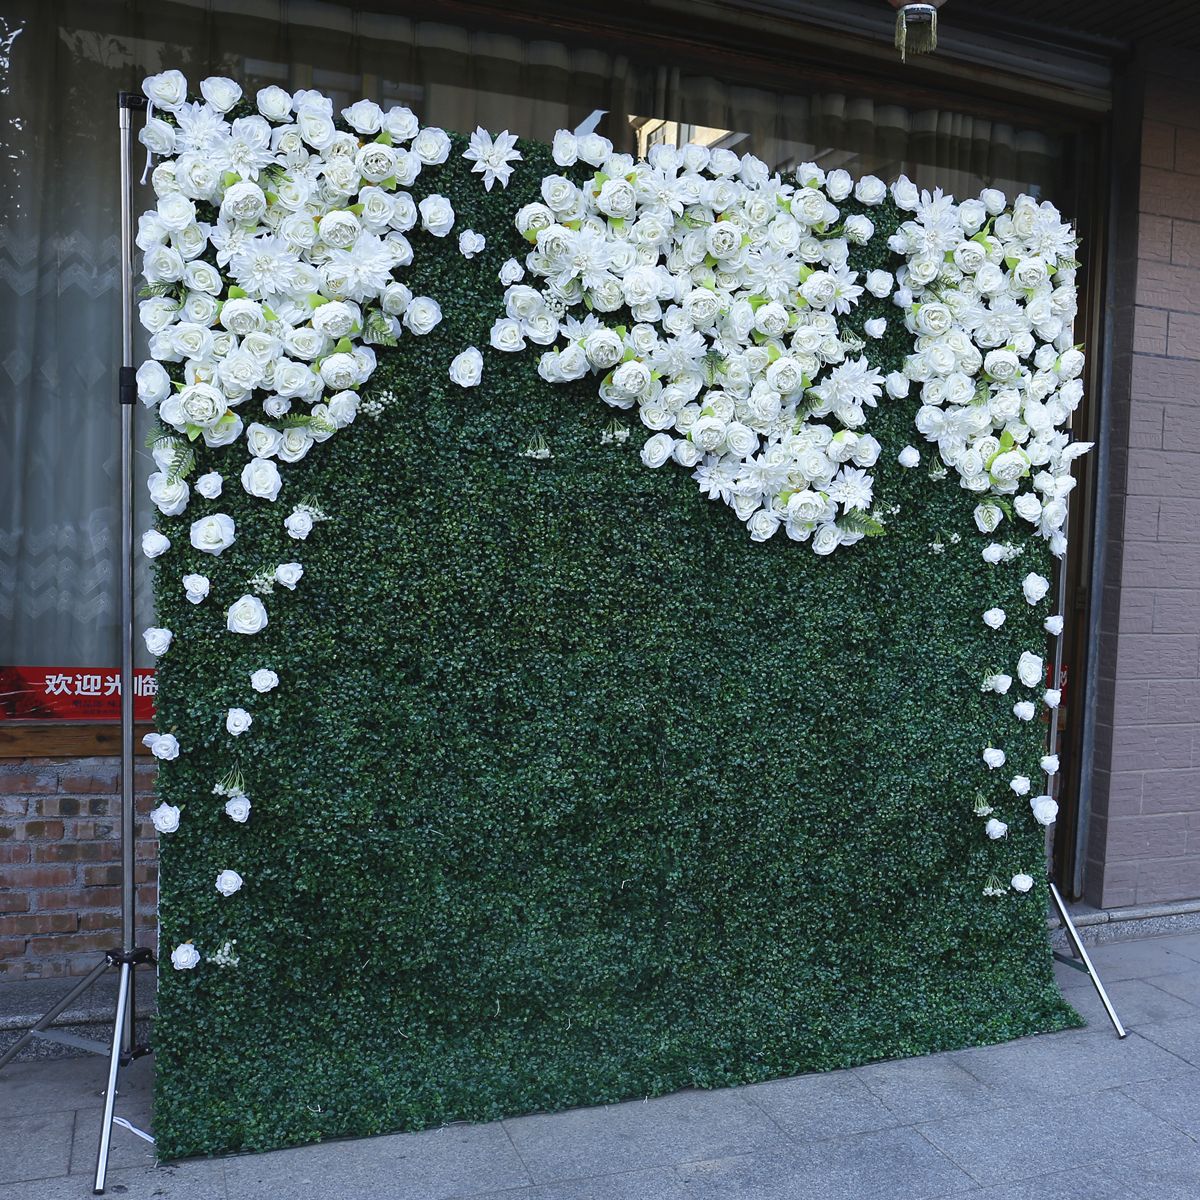 အစိမ်းရောင်အပင် နောက်ခံ နံရံတွင် အတုလုပ်ထားသော အပင် မင်္ဂလာပွဲ အလှဆင် မင်္ဂလာ အလှဆင် အဖြူထည် အောက်ခံ ပန်း နံရံ